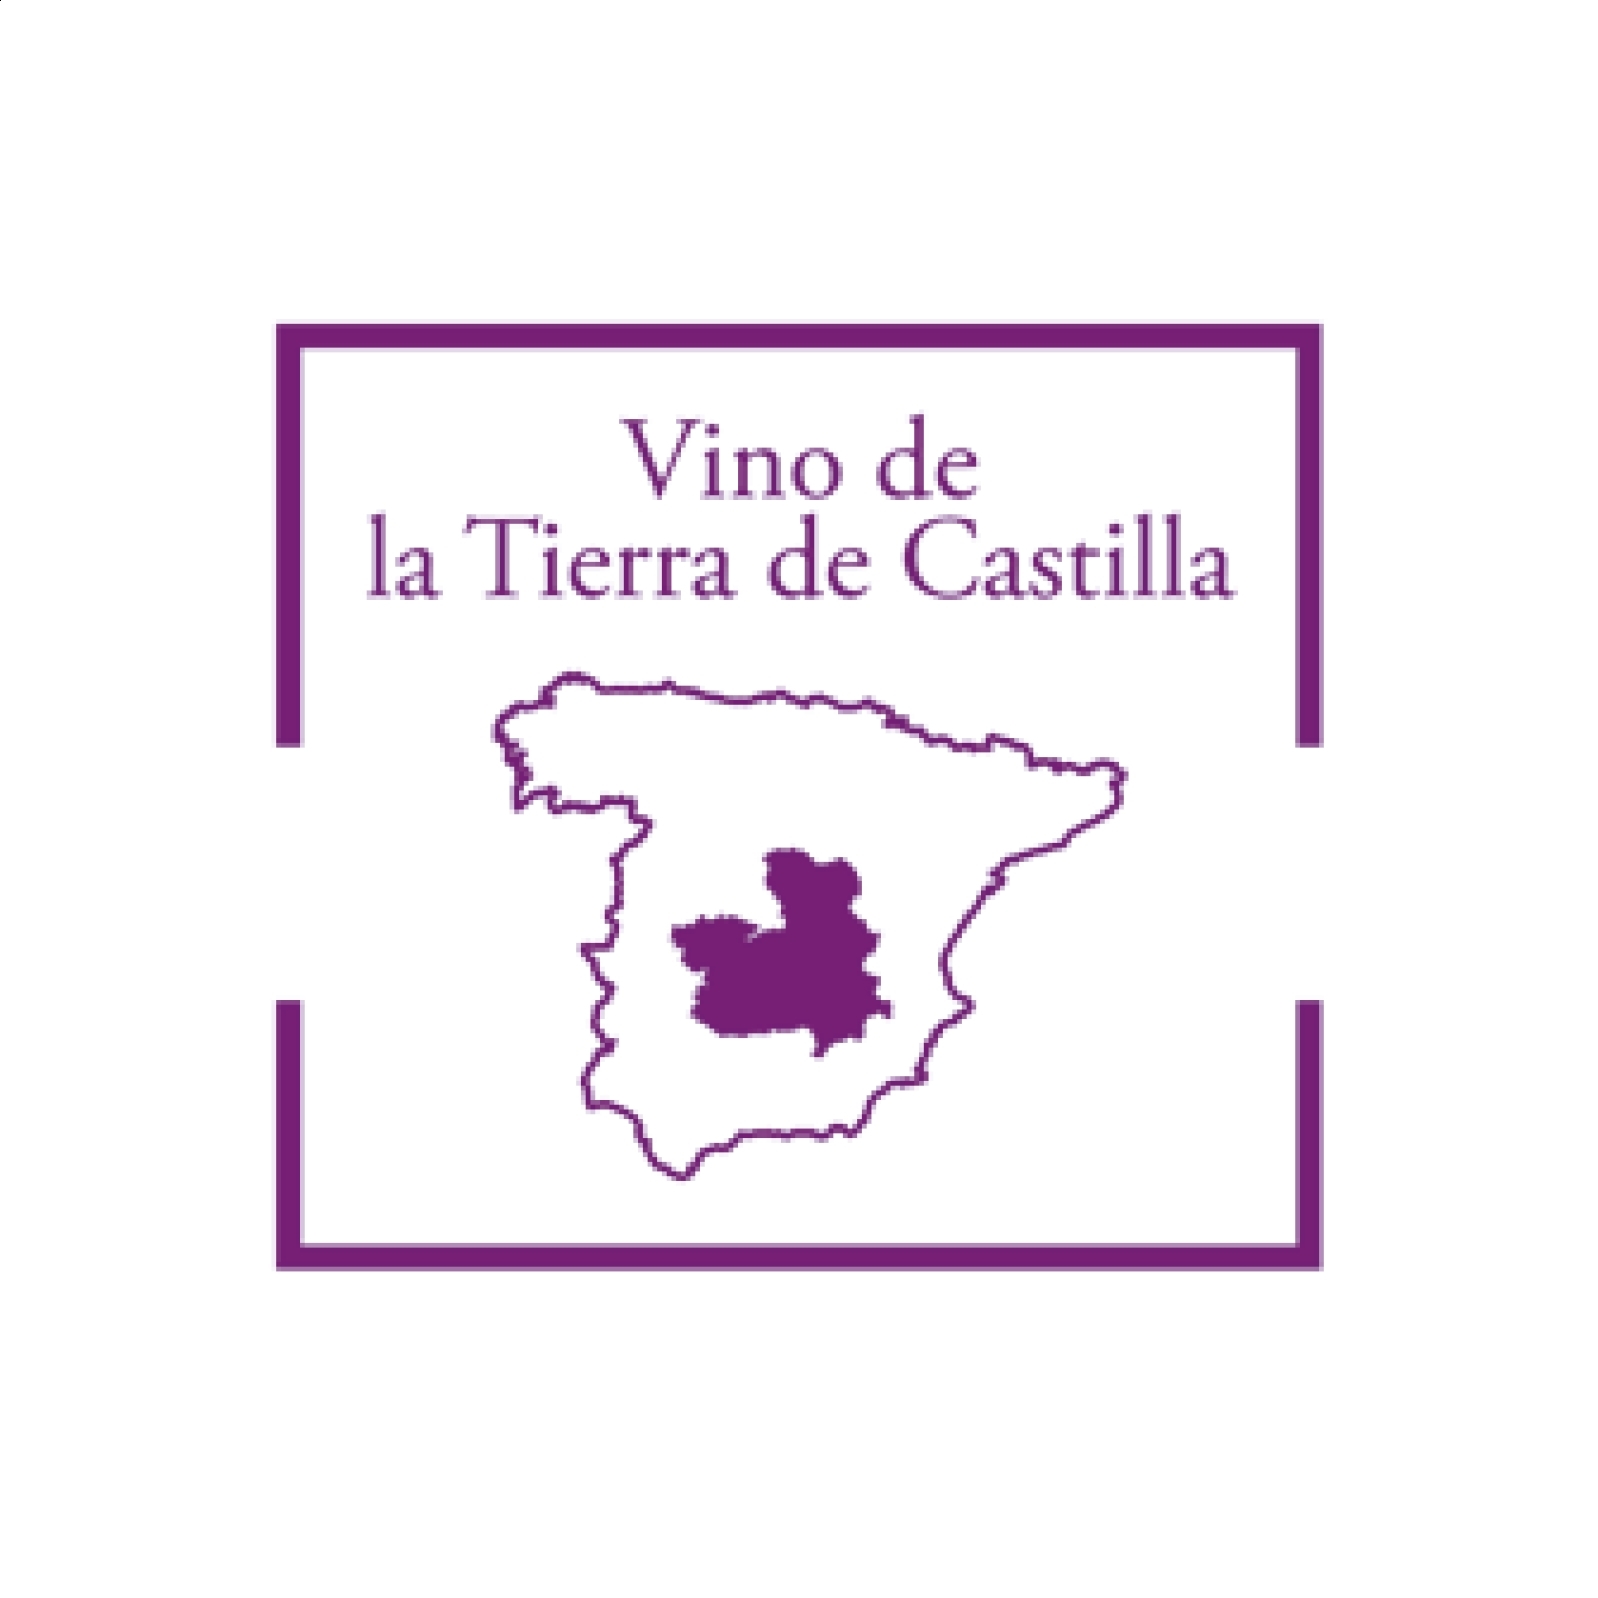 Bodega Calzadilla - Matelot vino blanco ecológico IGP Vino de la Tierra de Castilla 75cl, 6 uds